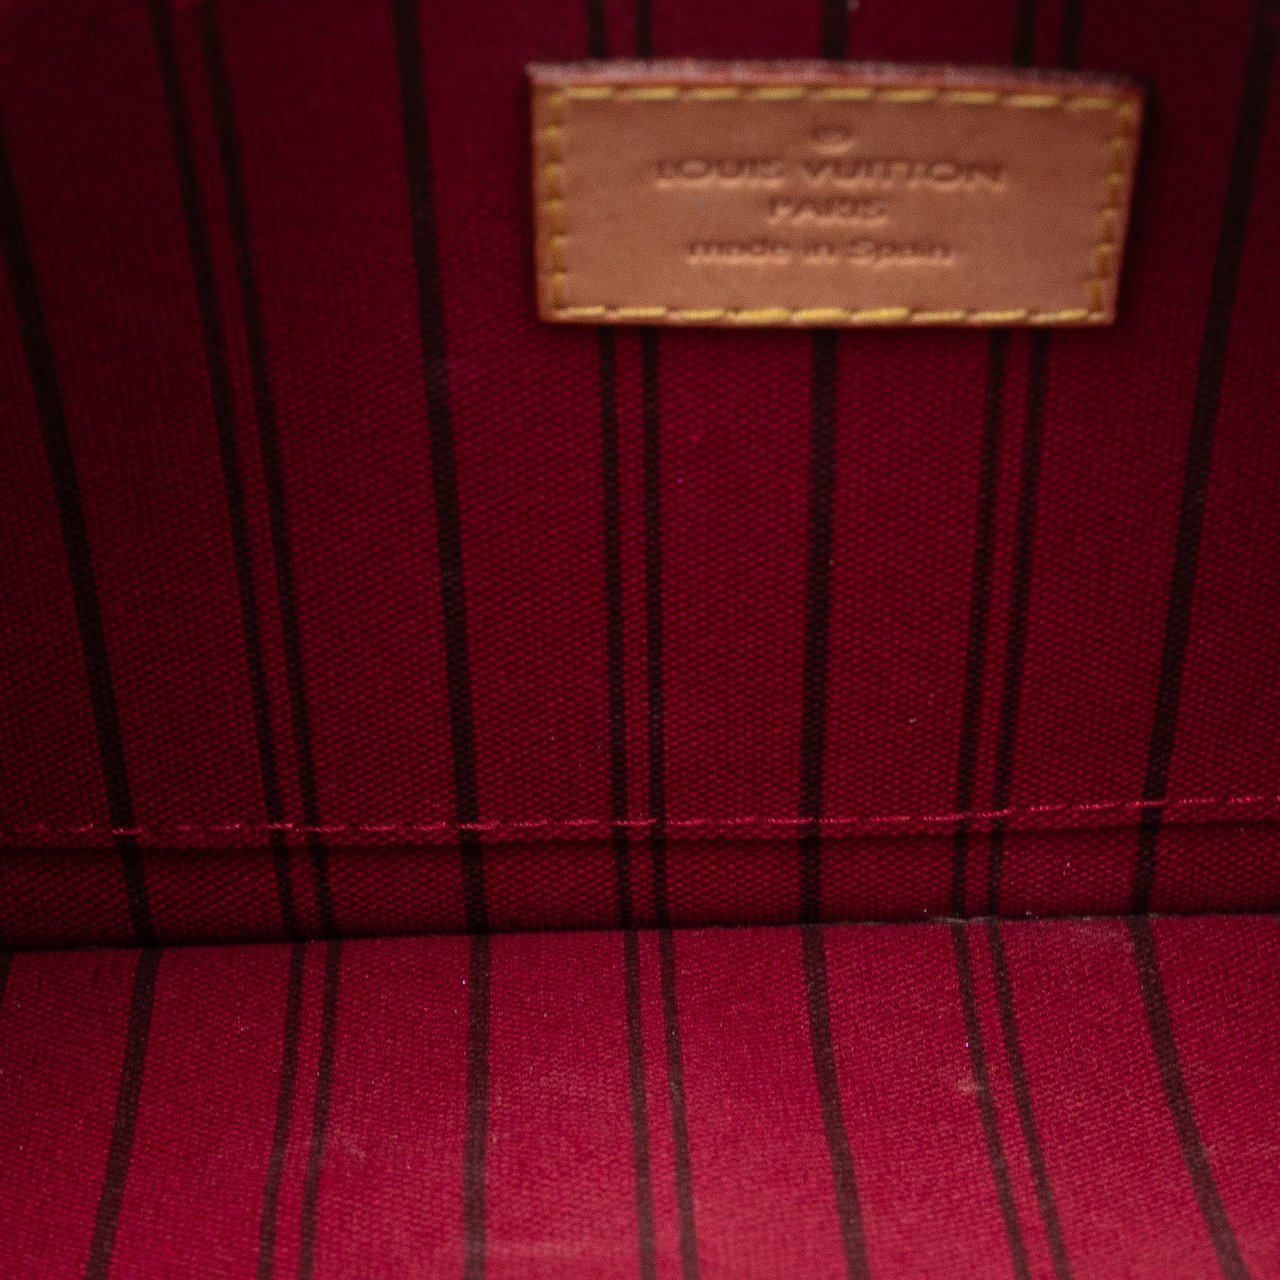 Louis Vuitton Monogram Neverfull Pochette Bruin